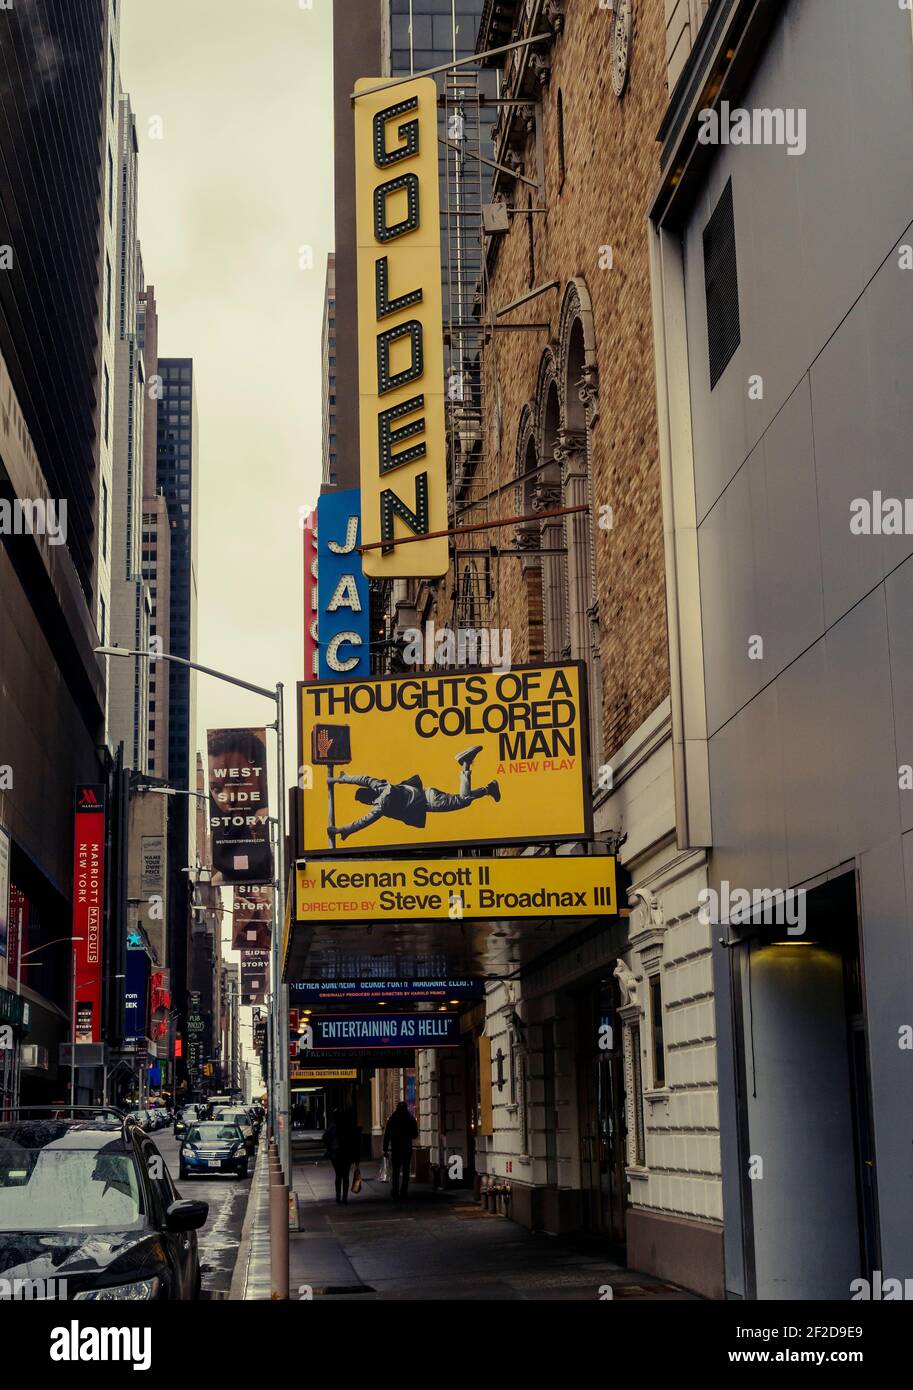 Fermeture des théâtres de Broadway, dont le Golden Theatre, à New York en raison de la pandémie COVID-19, le samedi 27 février 2021. Le premier nouveau chapiteau depuis le début de la pandémie a été installé au Théâtre d'Or pour la première nouvelle pièce depuis la pandémie, « Thoughts of a Colored Man » par le dramaturge Keenan Scott II (© Richard B. Levine) Banque D'Images